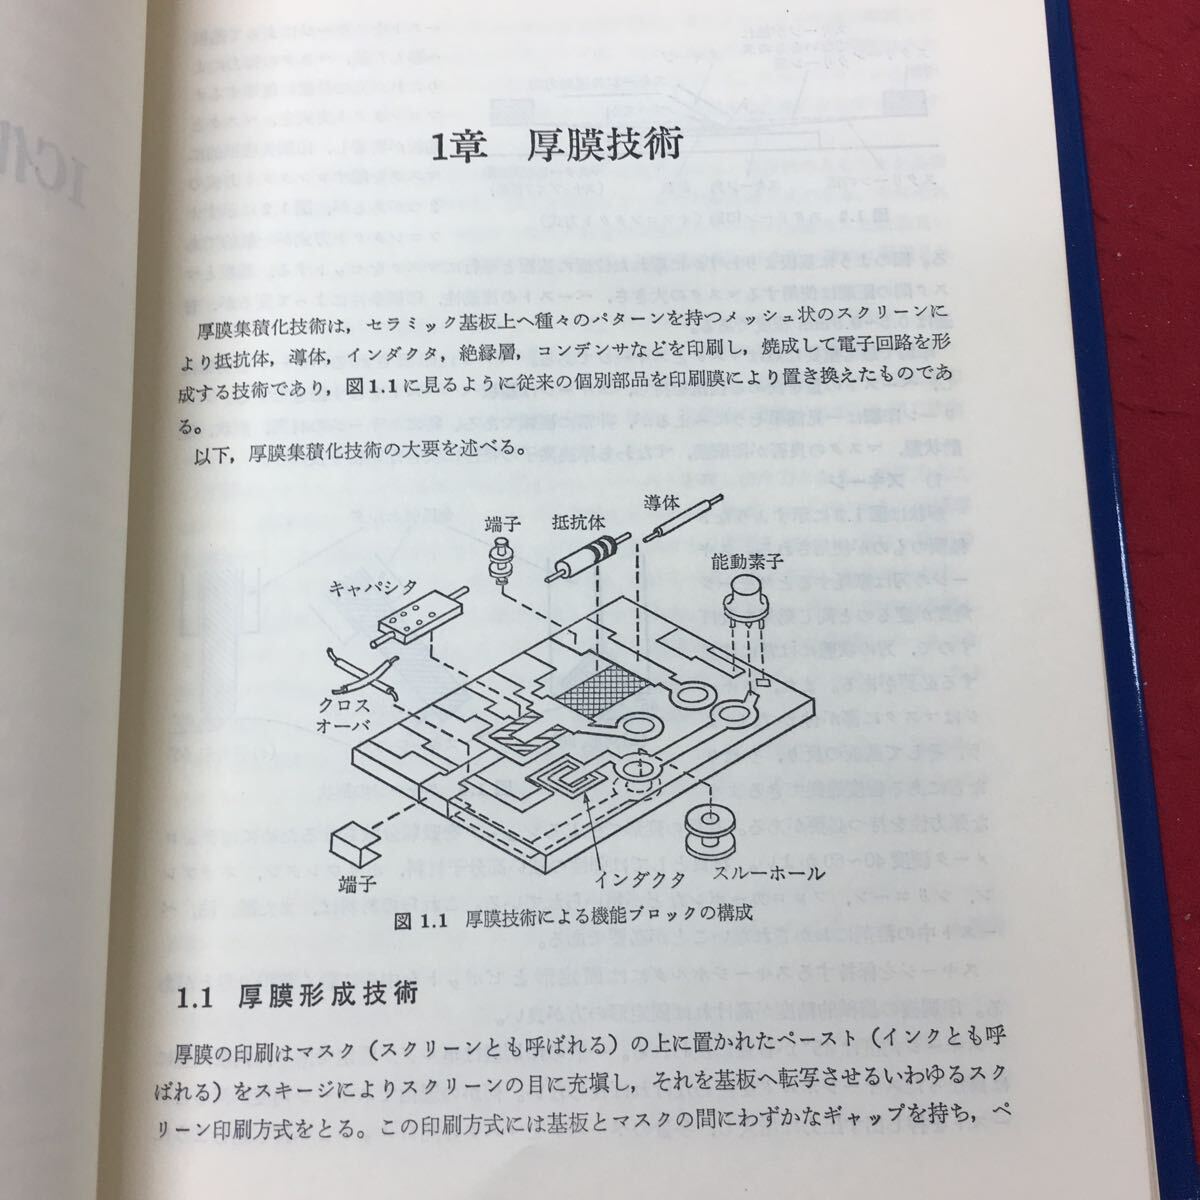 h-042※9 IC化実装技術 1980年1月15日 初版発行 工業調査会 工学 IC 技術 半導体 設計 応用 参考書 _画像6